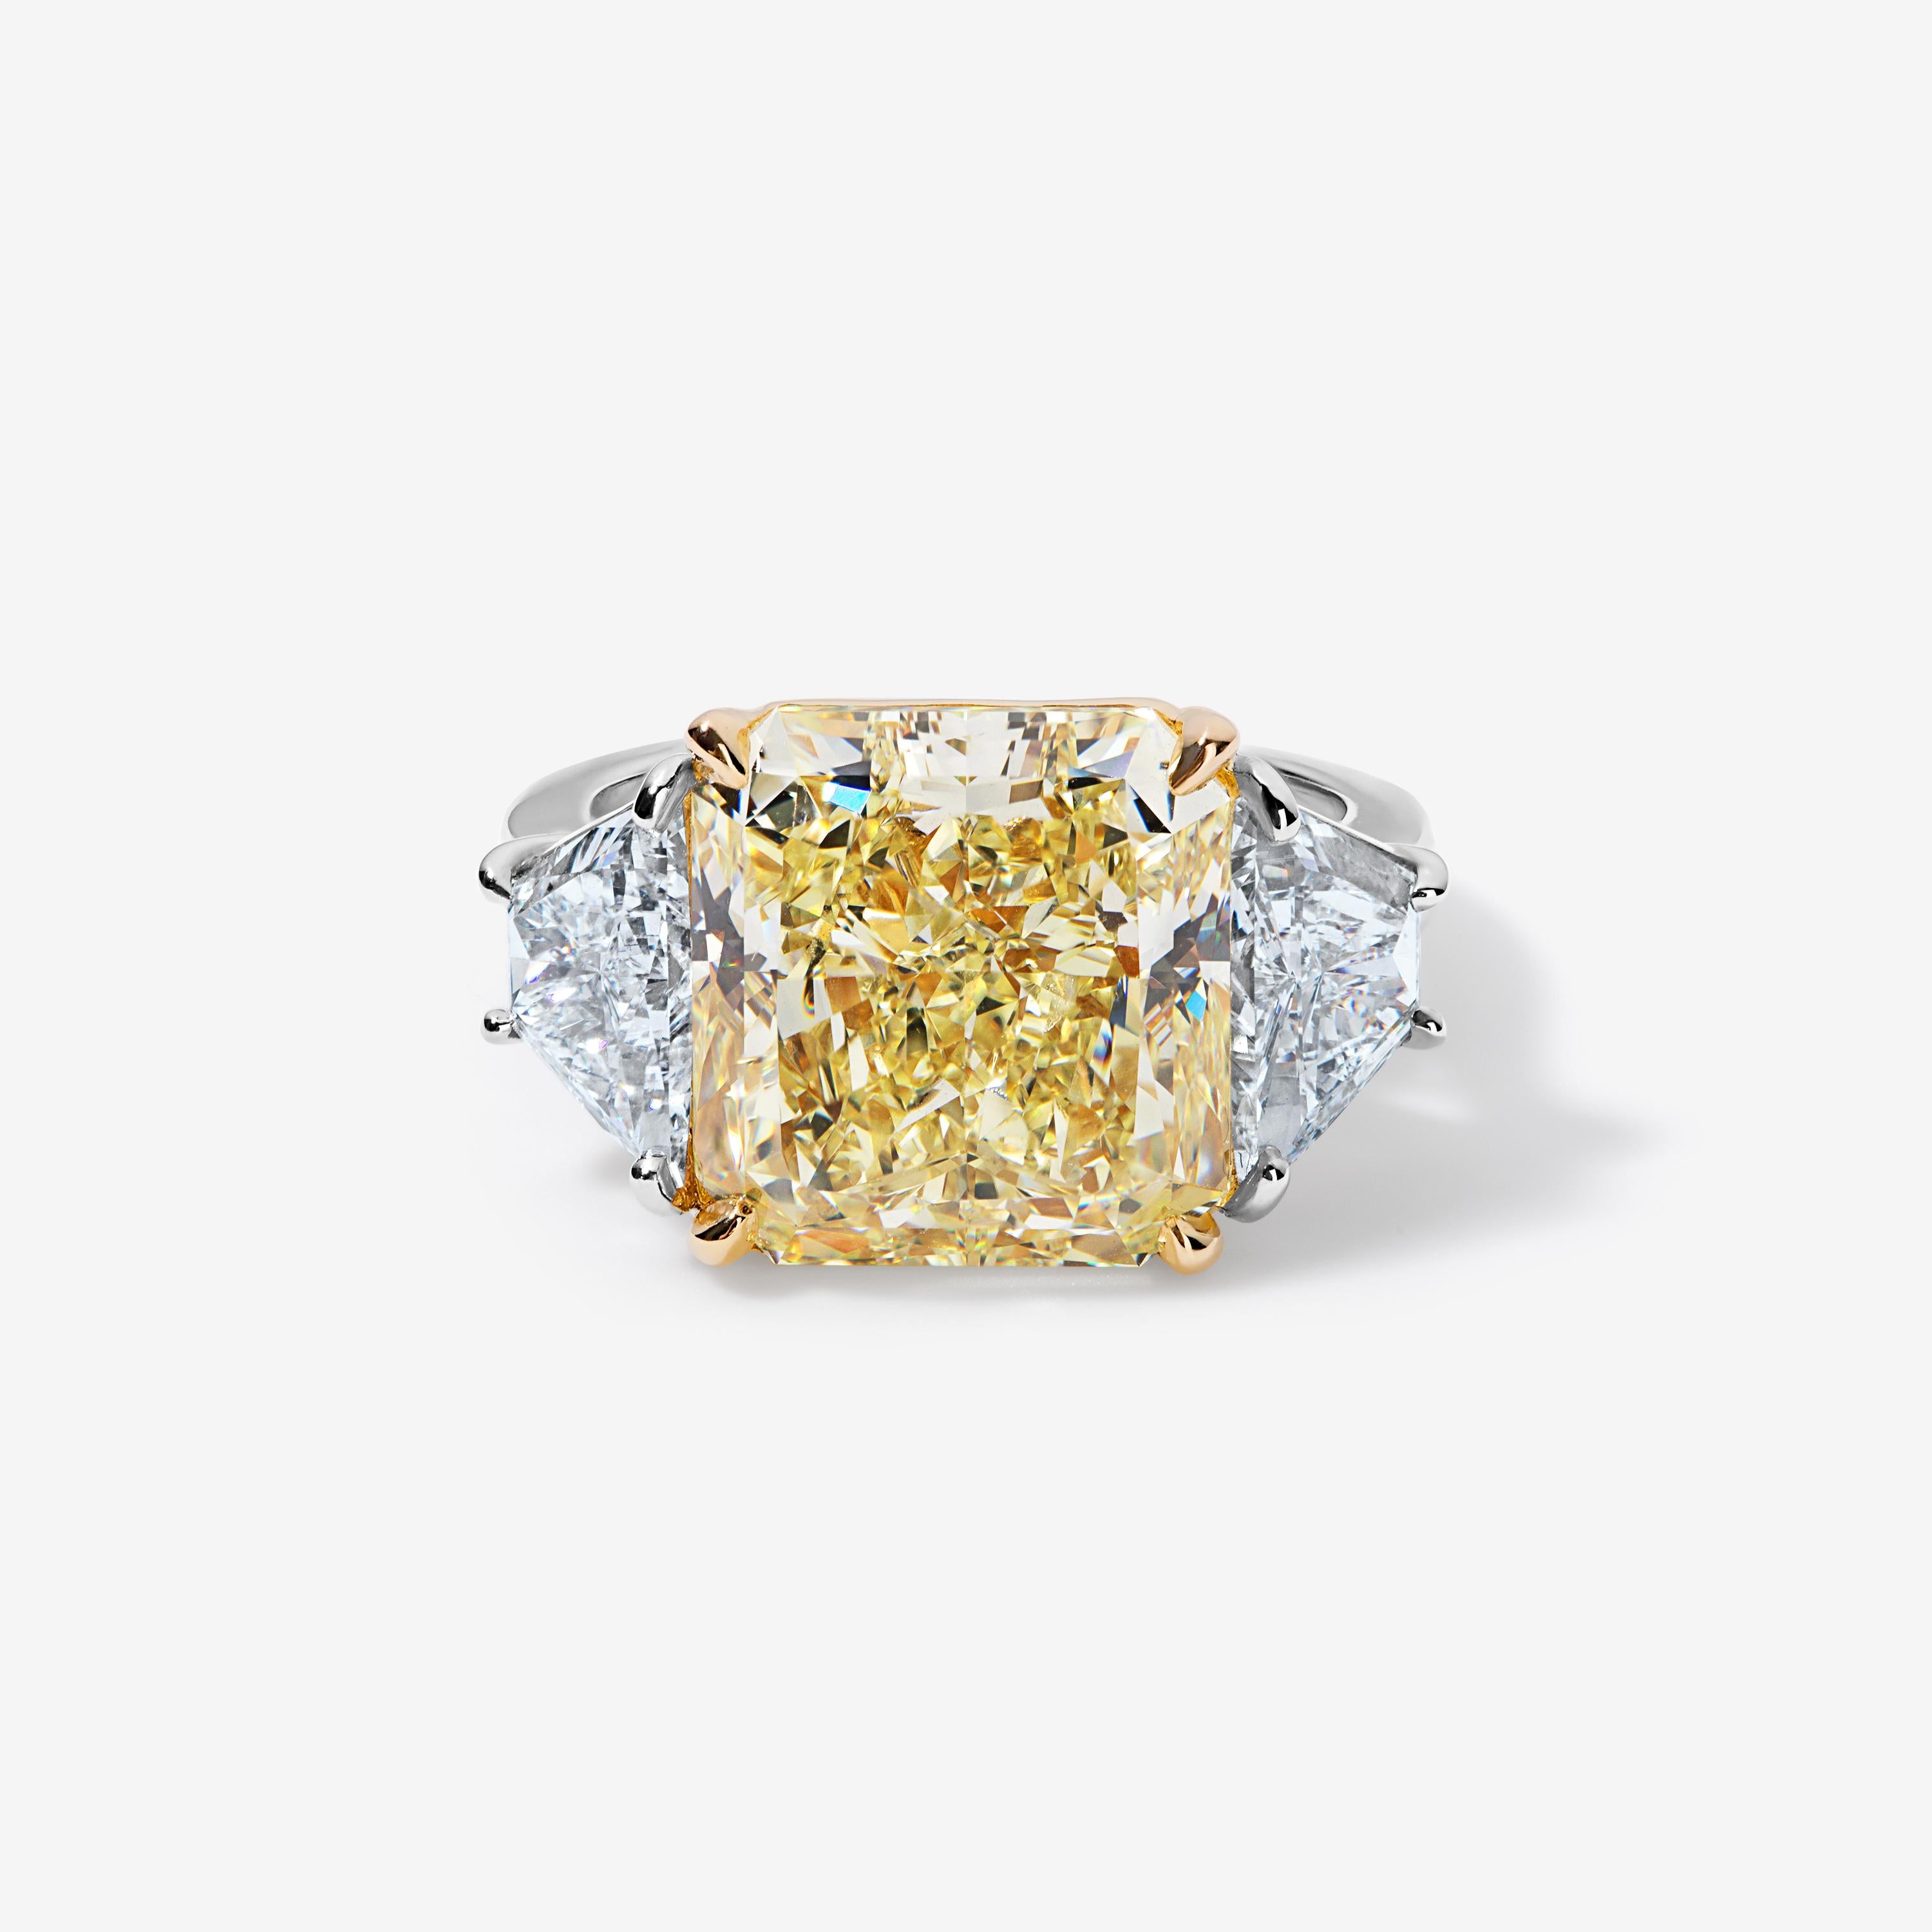 Für die Frau, die die Sonne am Finger tragen möchte.

Dieser 10-karätige gelbe Diamant im Brillantschliff ist zwischen zwei trapezförmigen weißen Diamanten eingebettet. Er hat eine kräftige, gleichmäßig gesättigte Farbe, ist augenrein und zeigt mehr